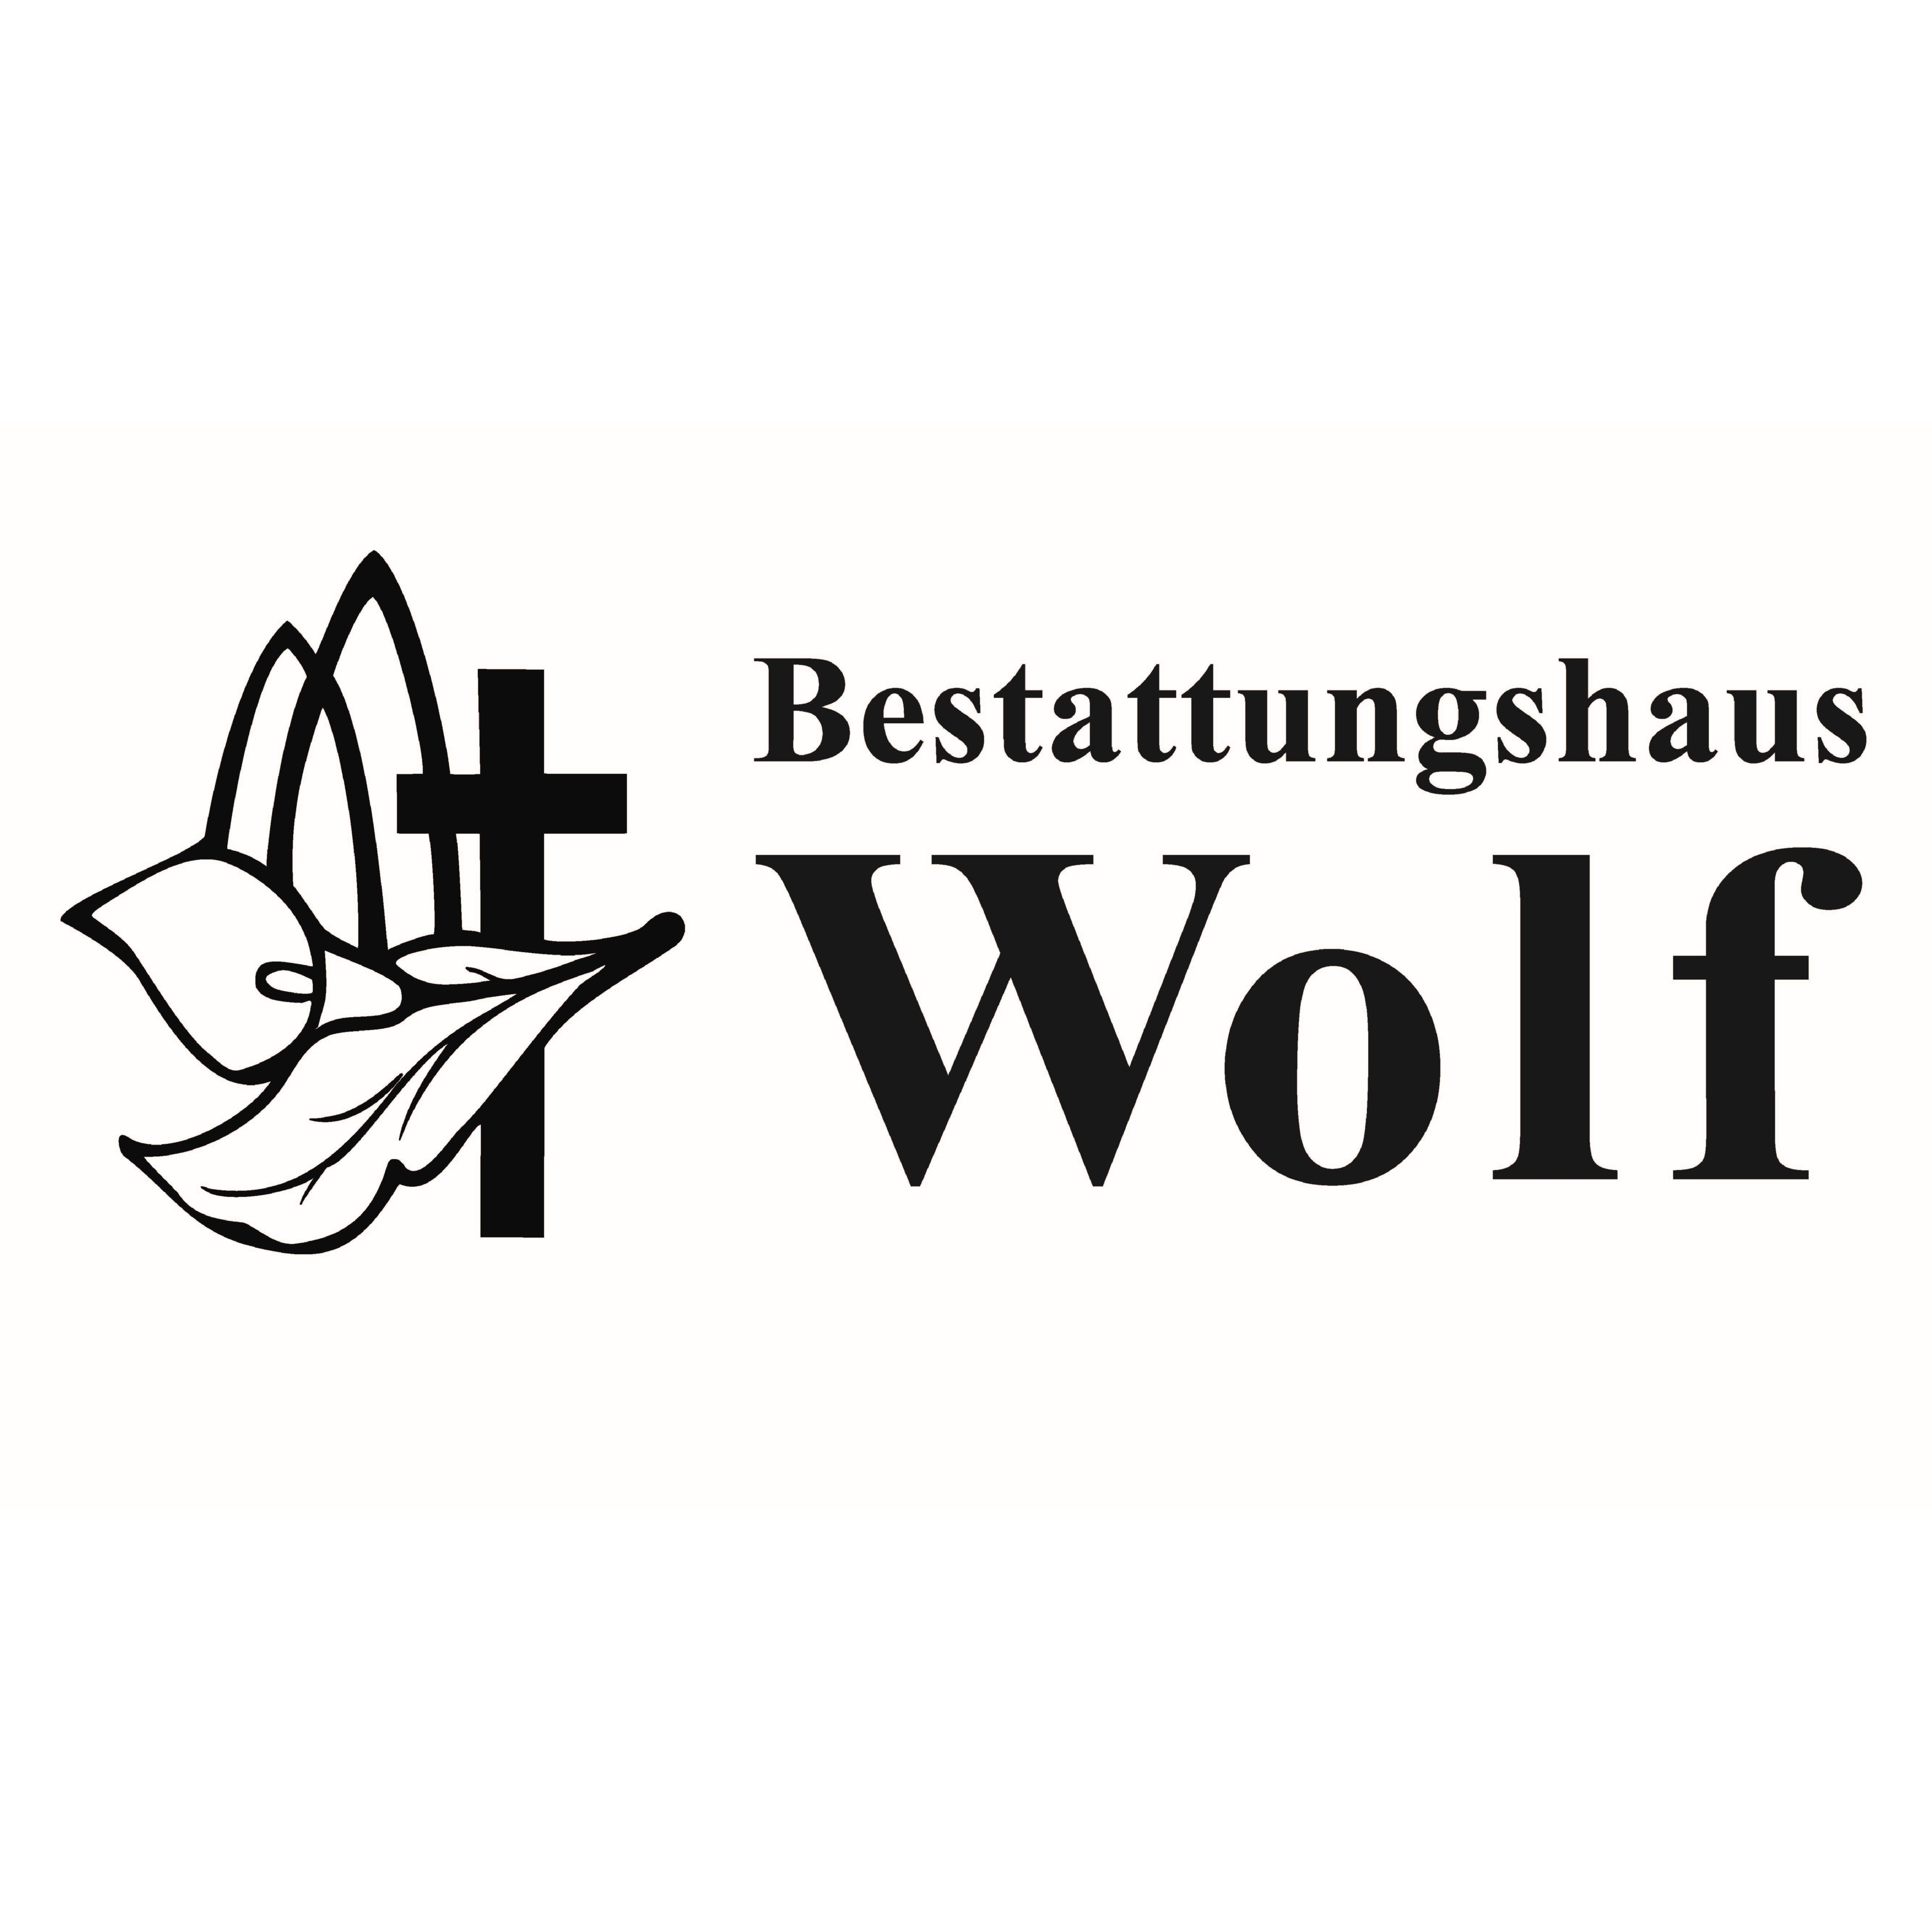 Bestattungshaus Wolf in Neudietendorf Gemeinde Nesse-Apfelstädt - Logo